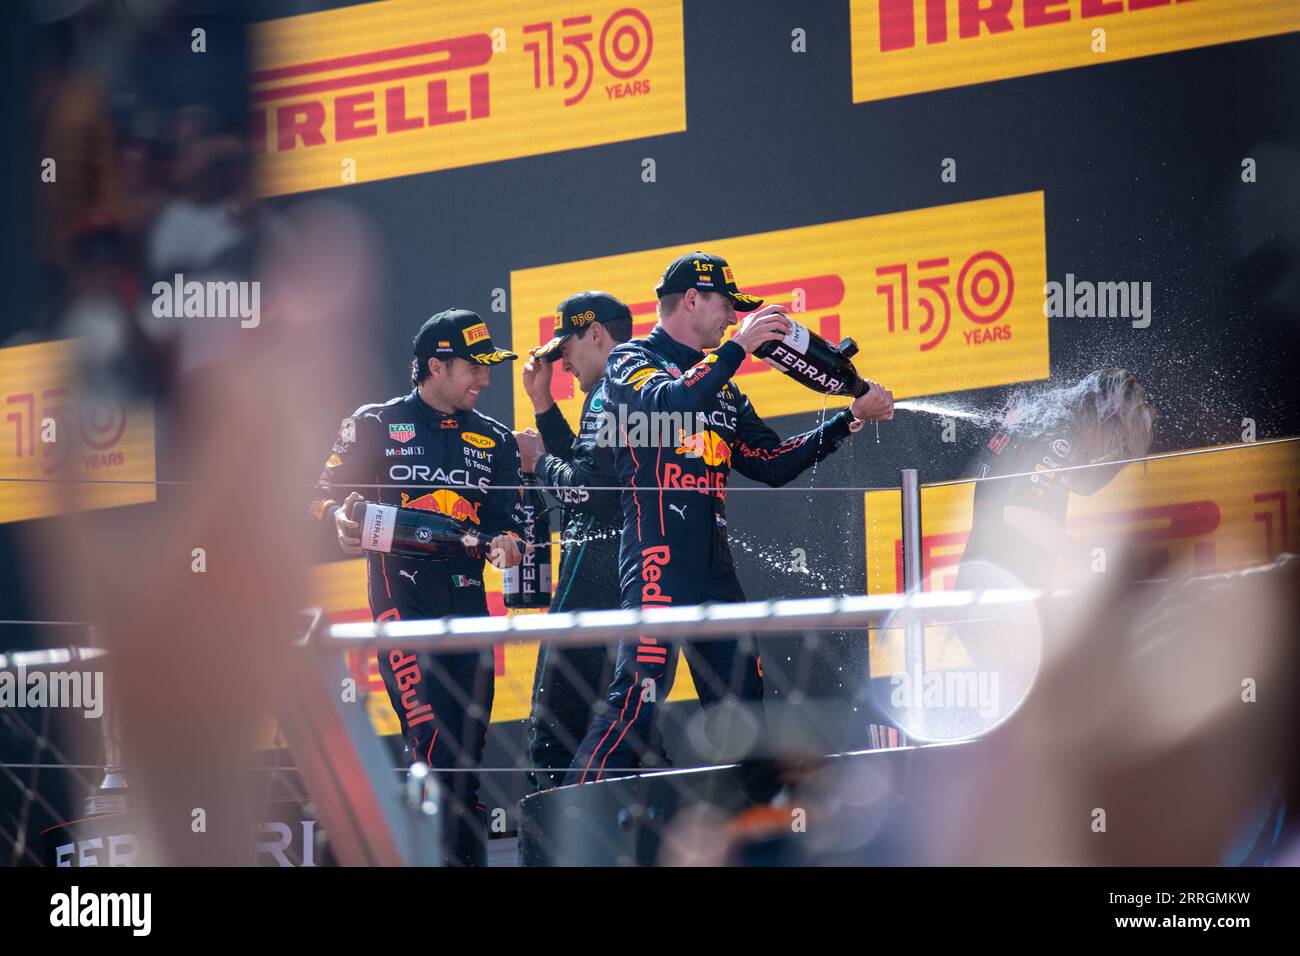 George Russell, Max Verstappen und Sergio Perez feierten jubelnd und versprühten Champagner nach ihren Siegen beim Großen Preis von Spanien. Stockfoto